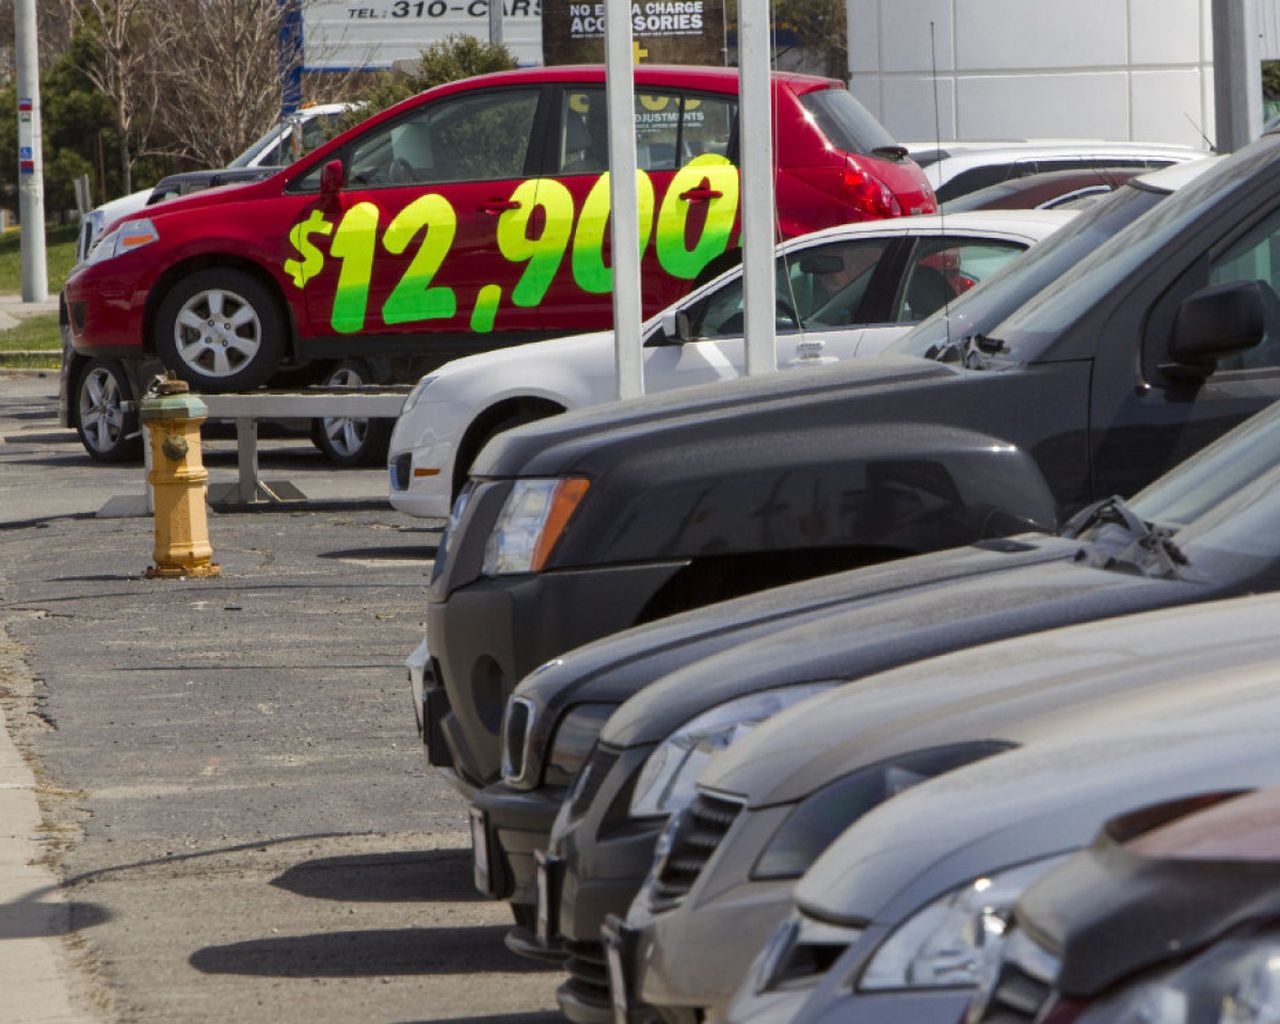 Empezaron a caer los precios de los autos usados por aumento de inventarios 